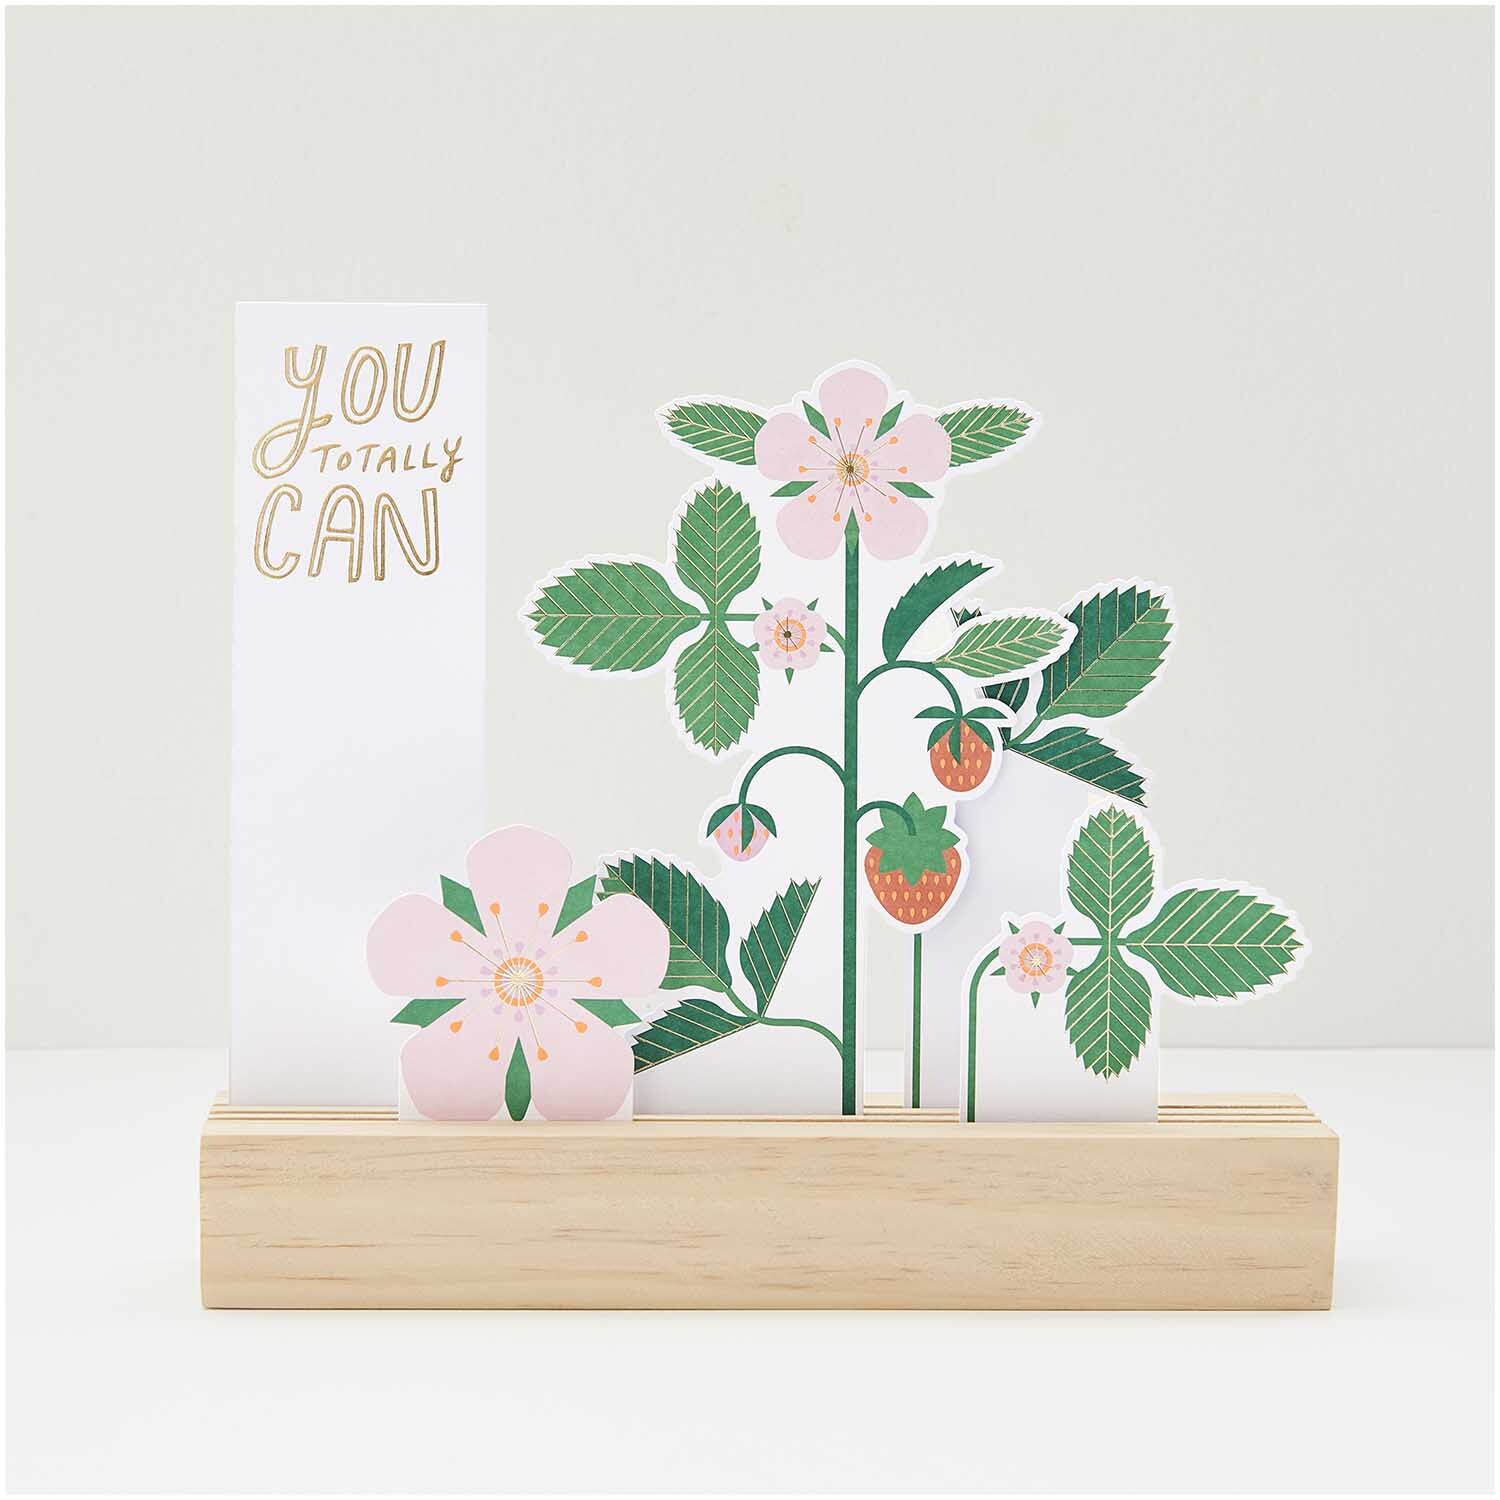 Paper Poetry Kartendeko-Set Erdbeeren & Blüten 5 Stück 350g/m²